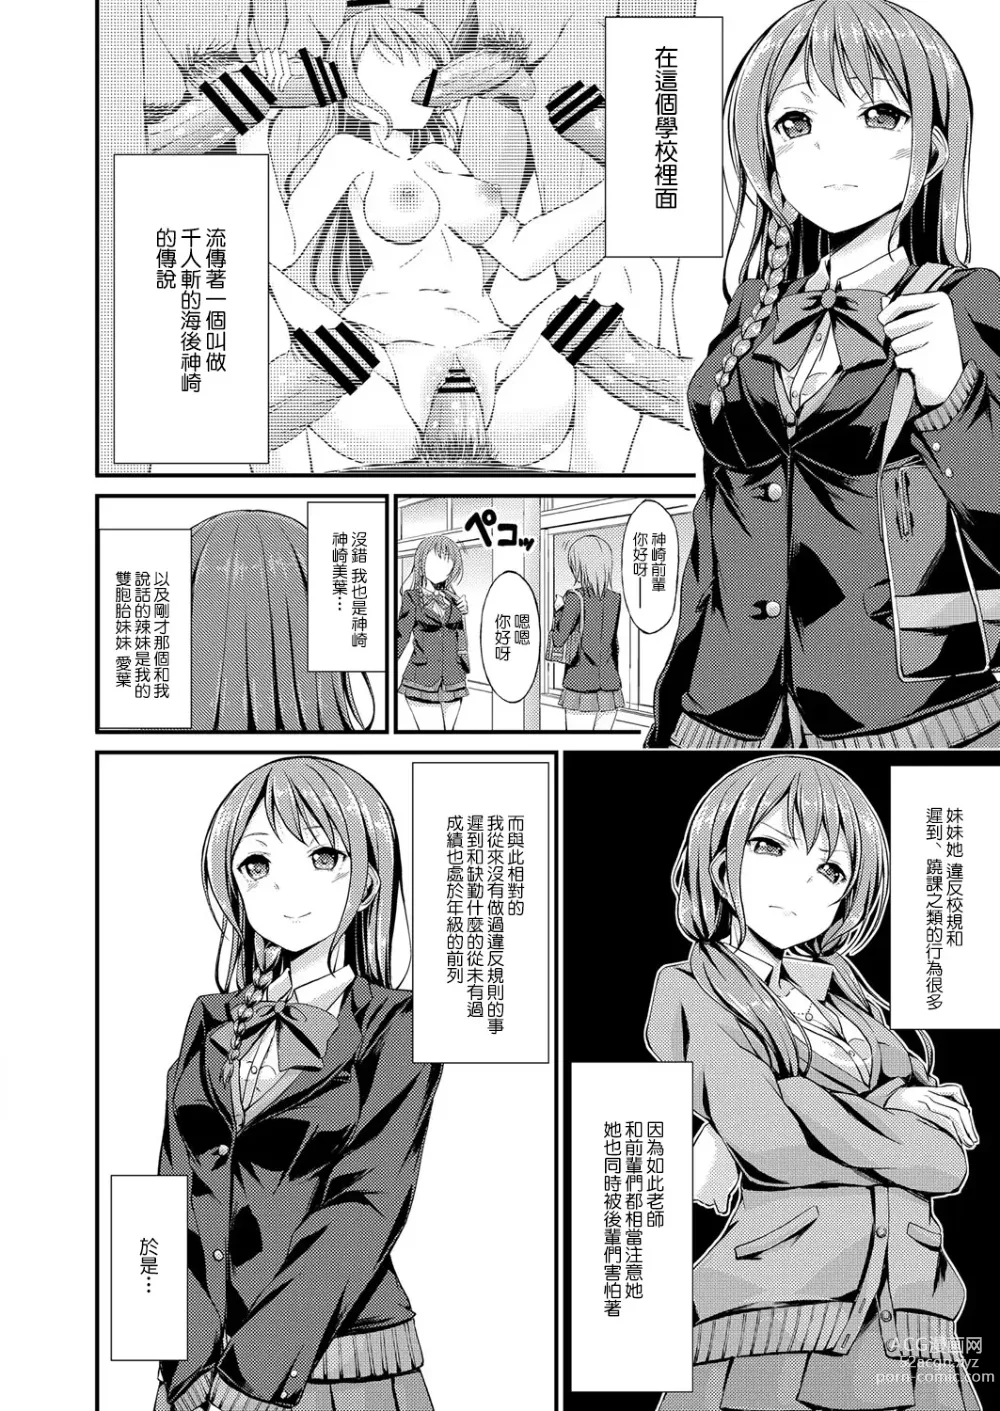 Page 2 of manga Himitsu no Asobi